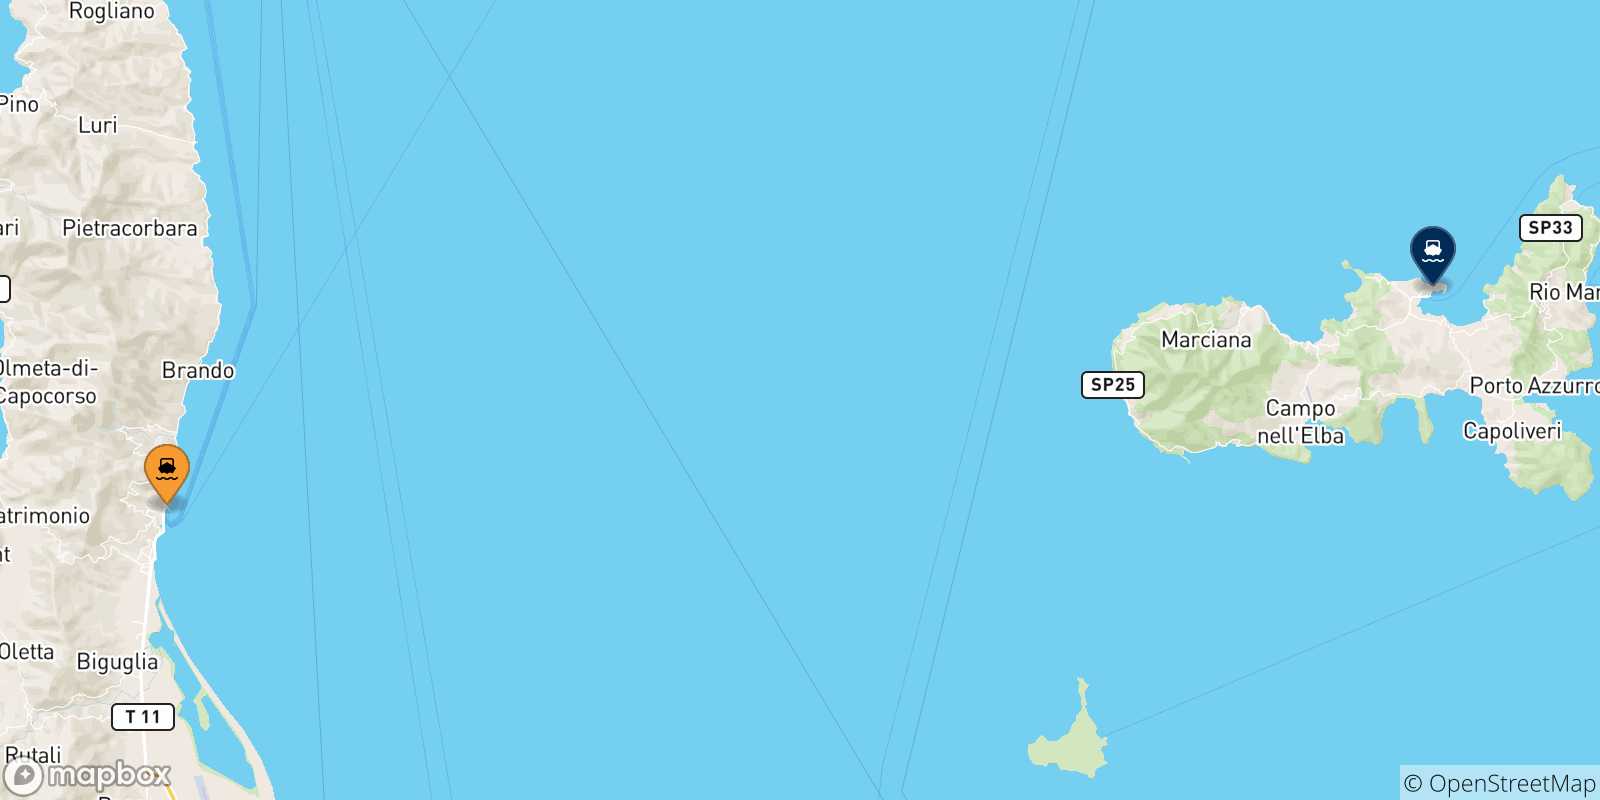 Mappa delle possibili rotte tra la Corsica e Portoferraio